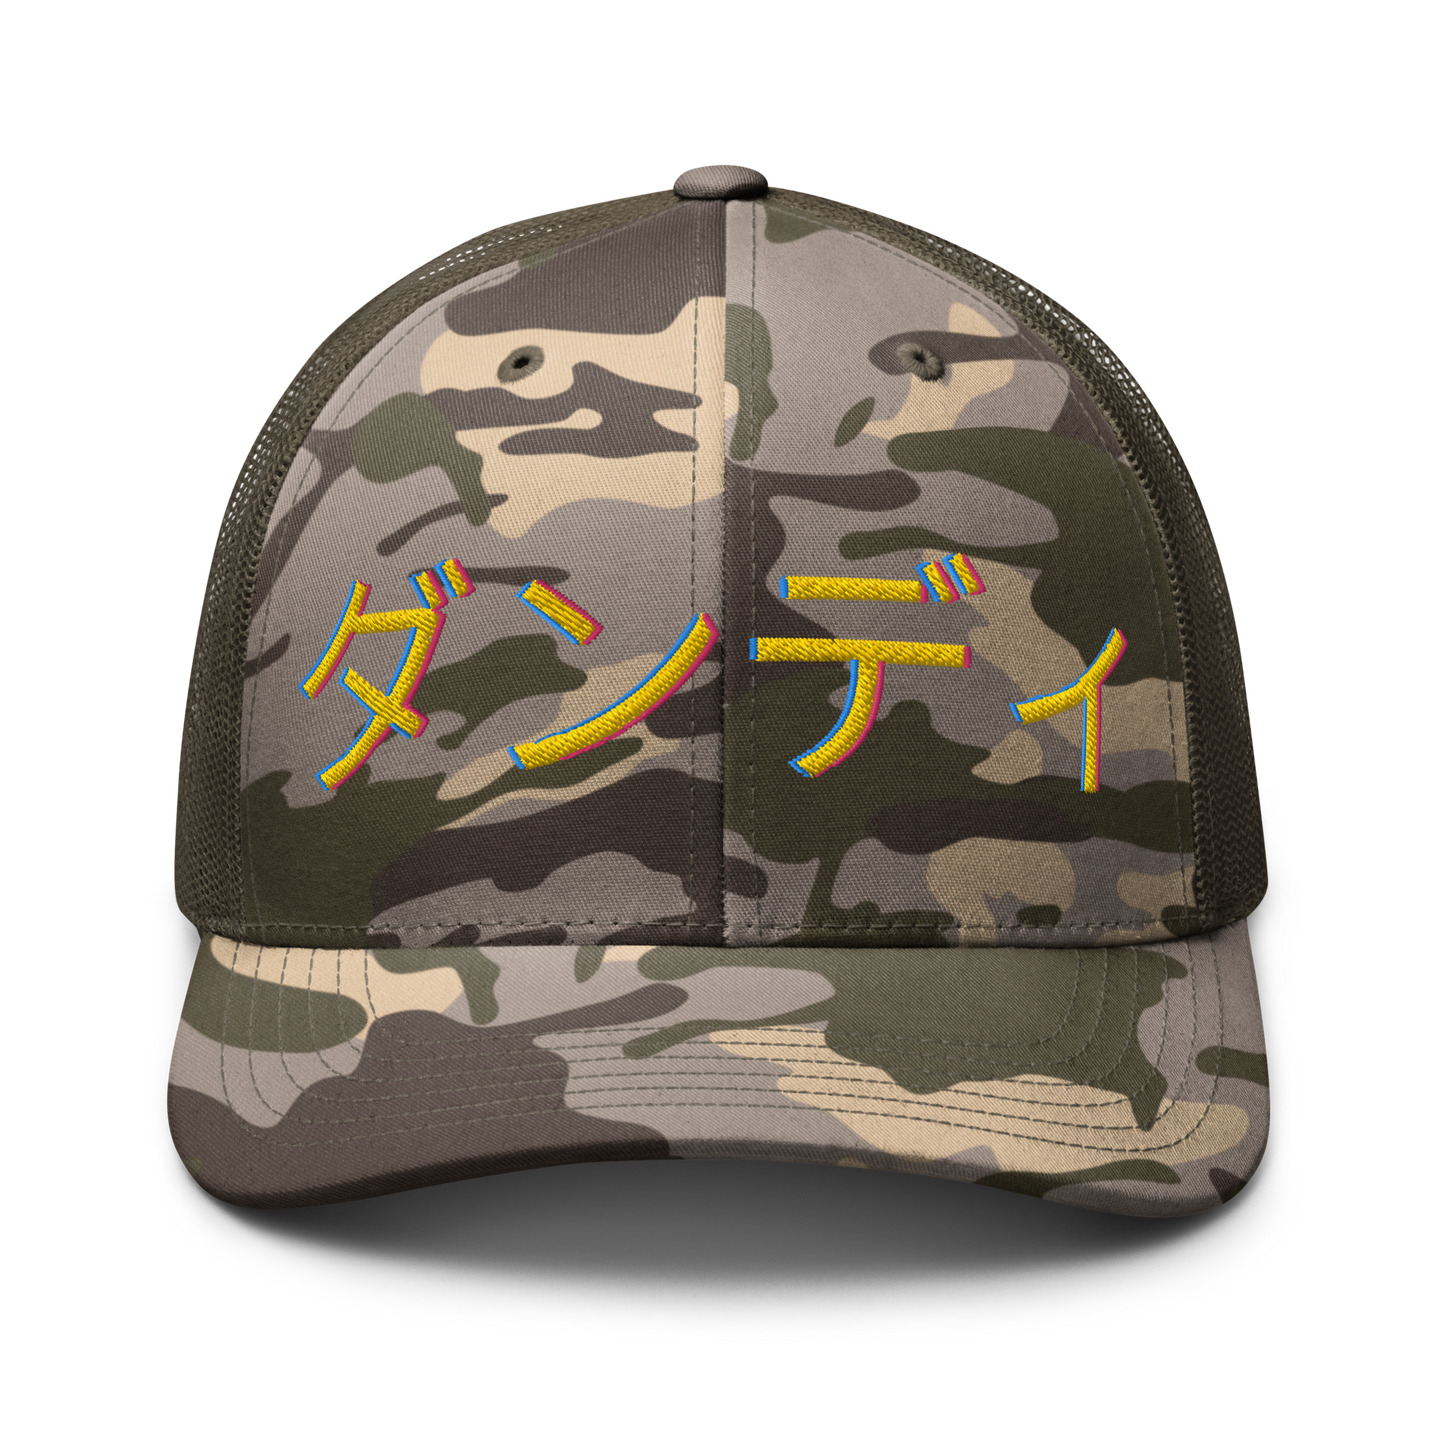 ダンディ Camouflage trucker hat